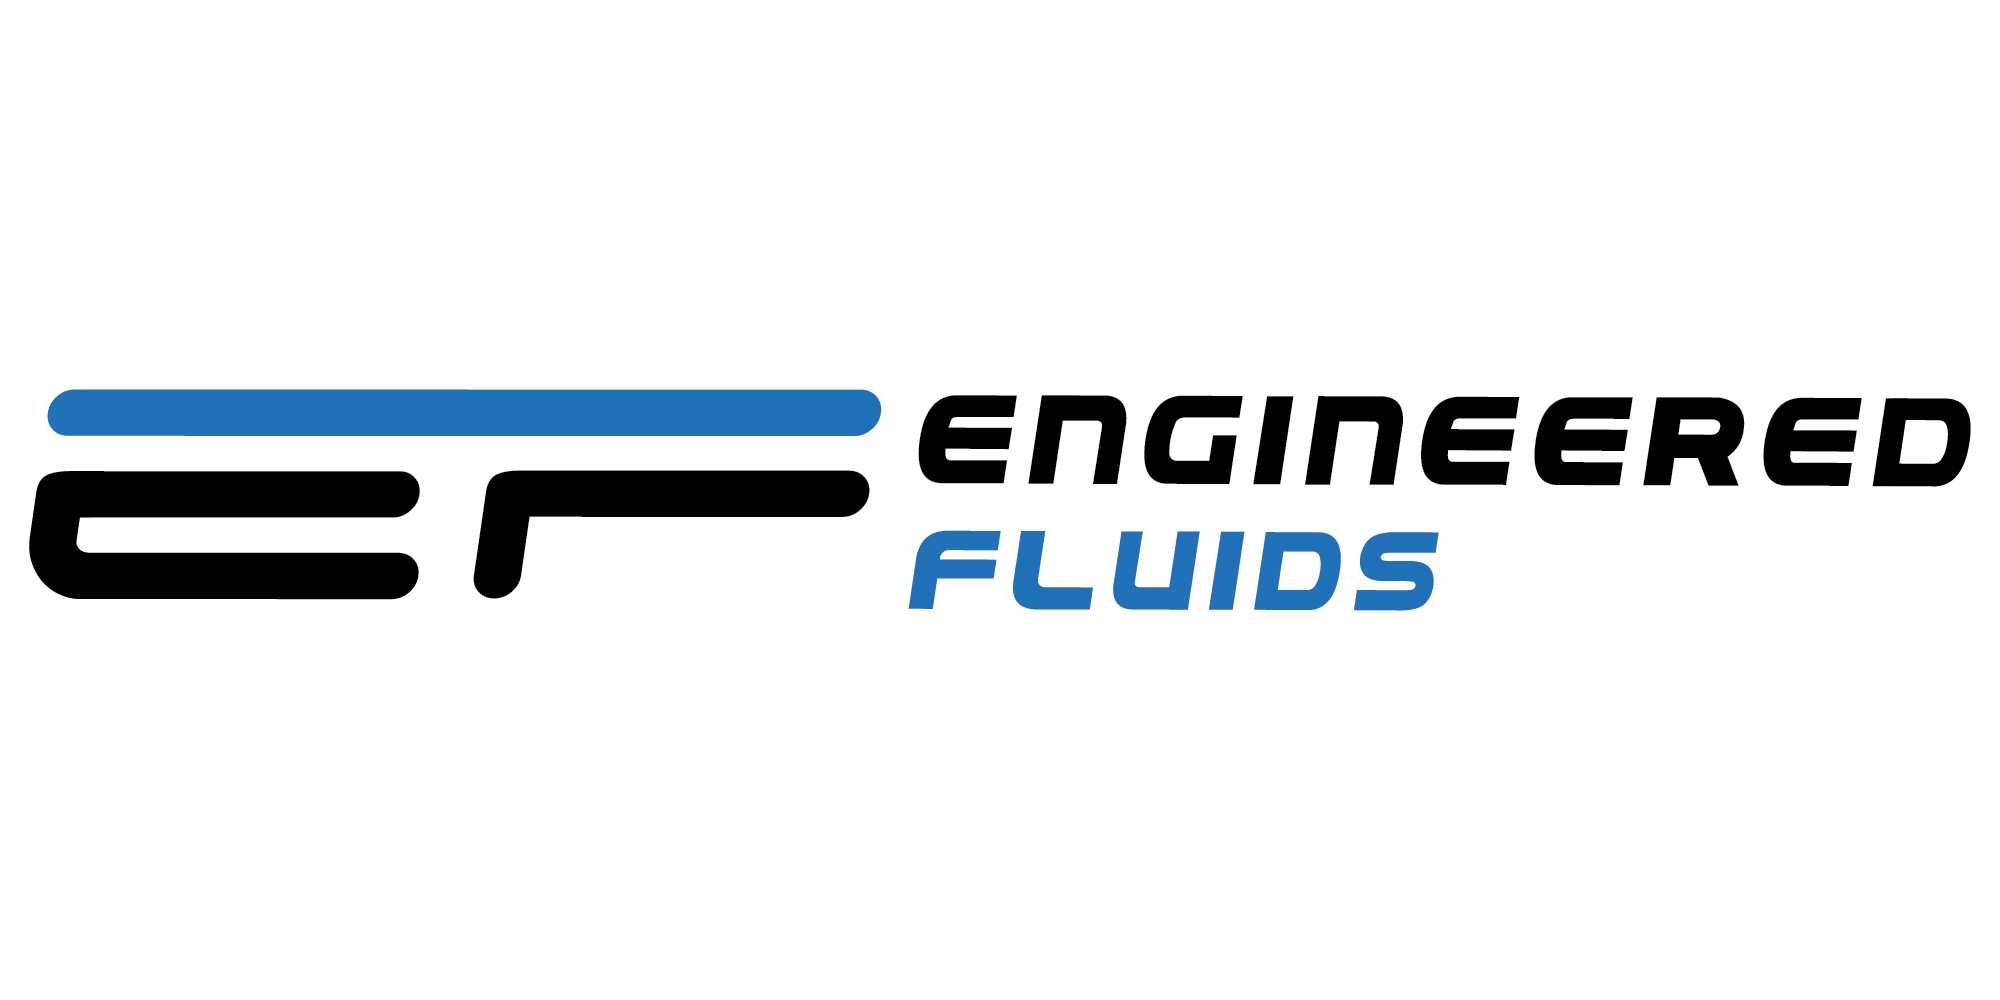 Engineered Fluids Logo